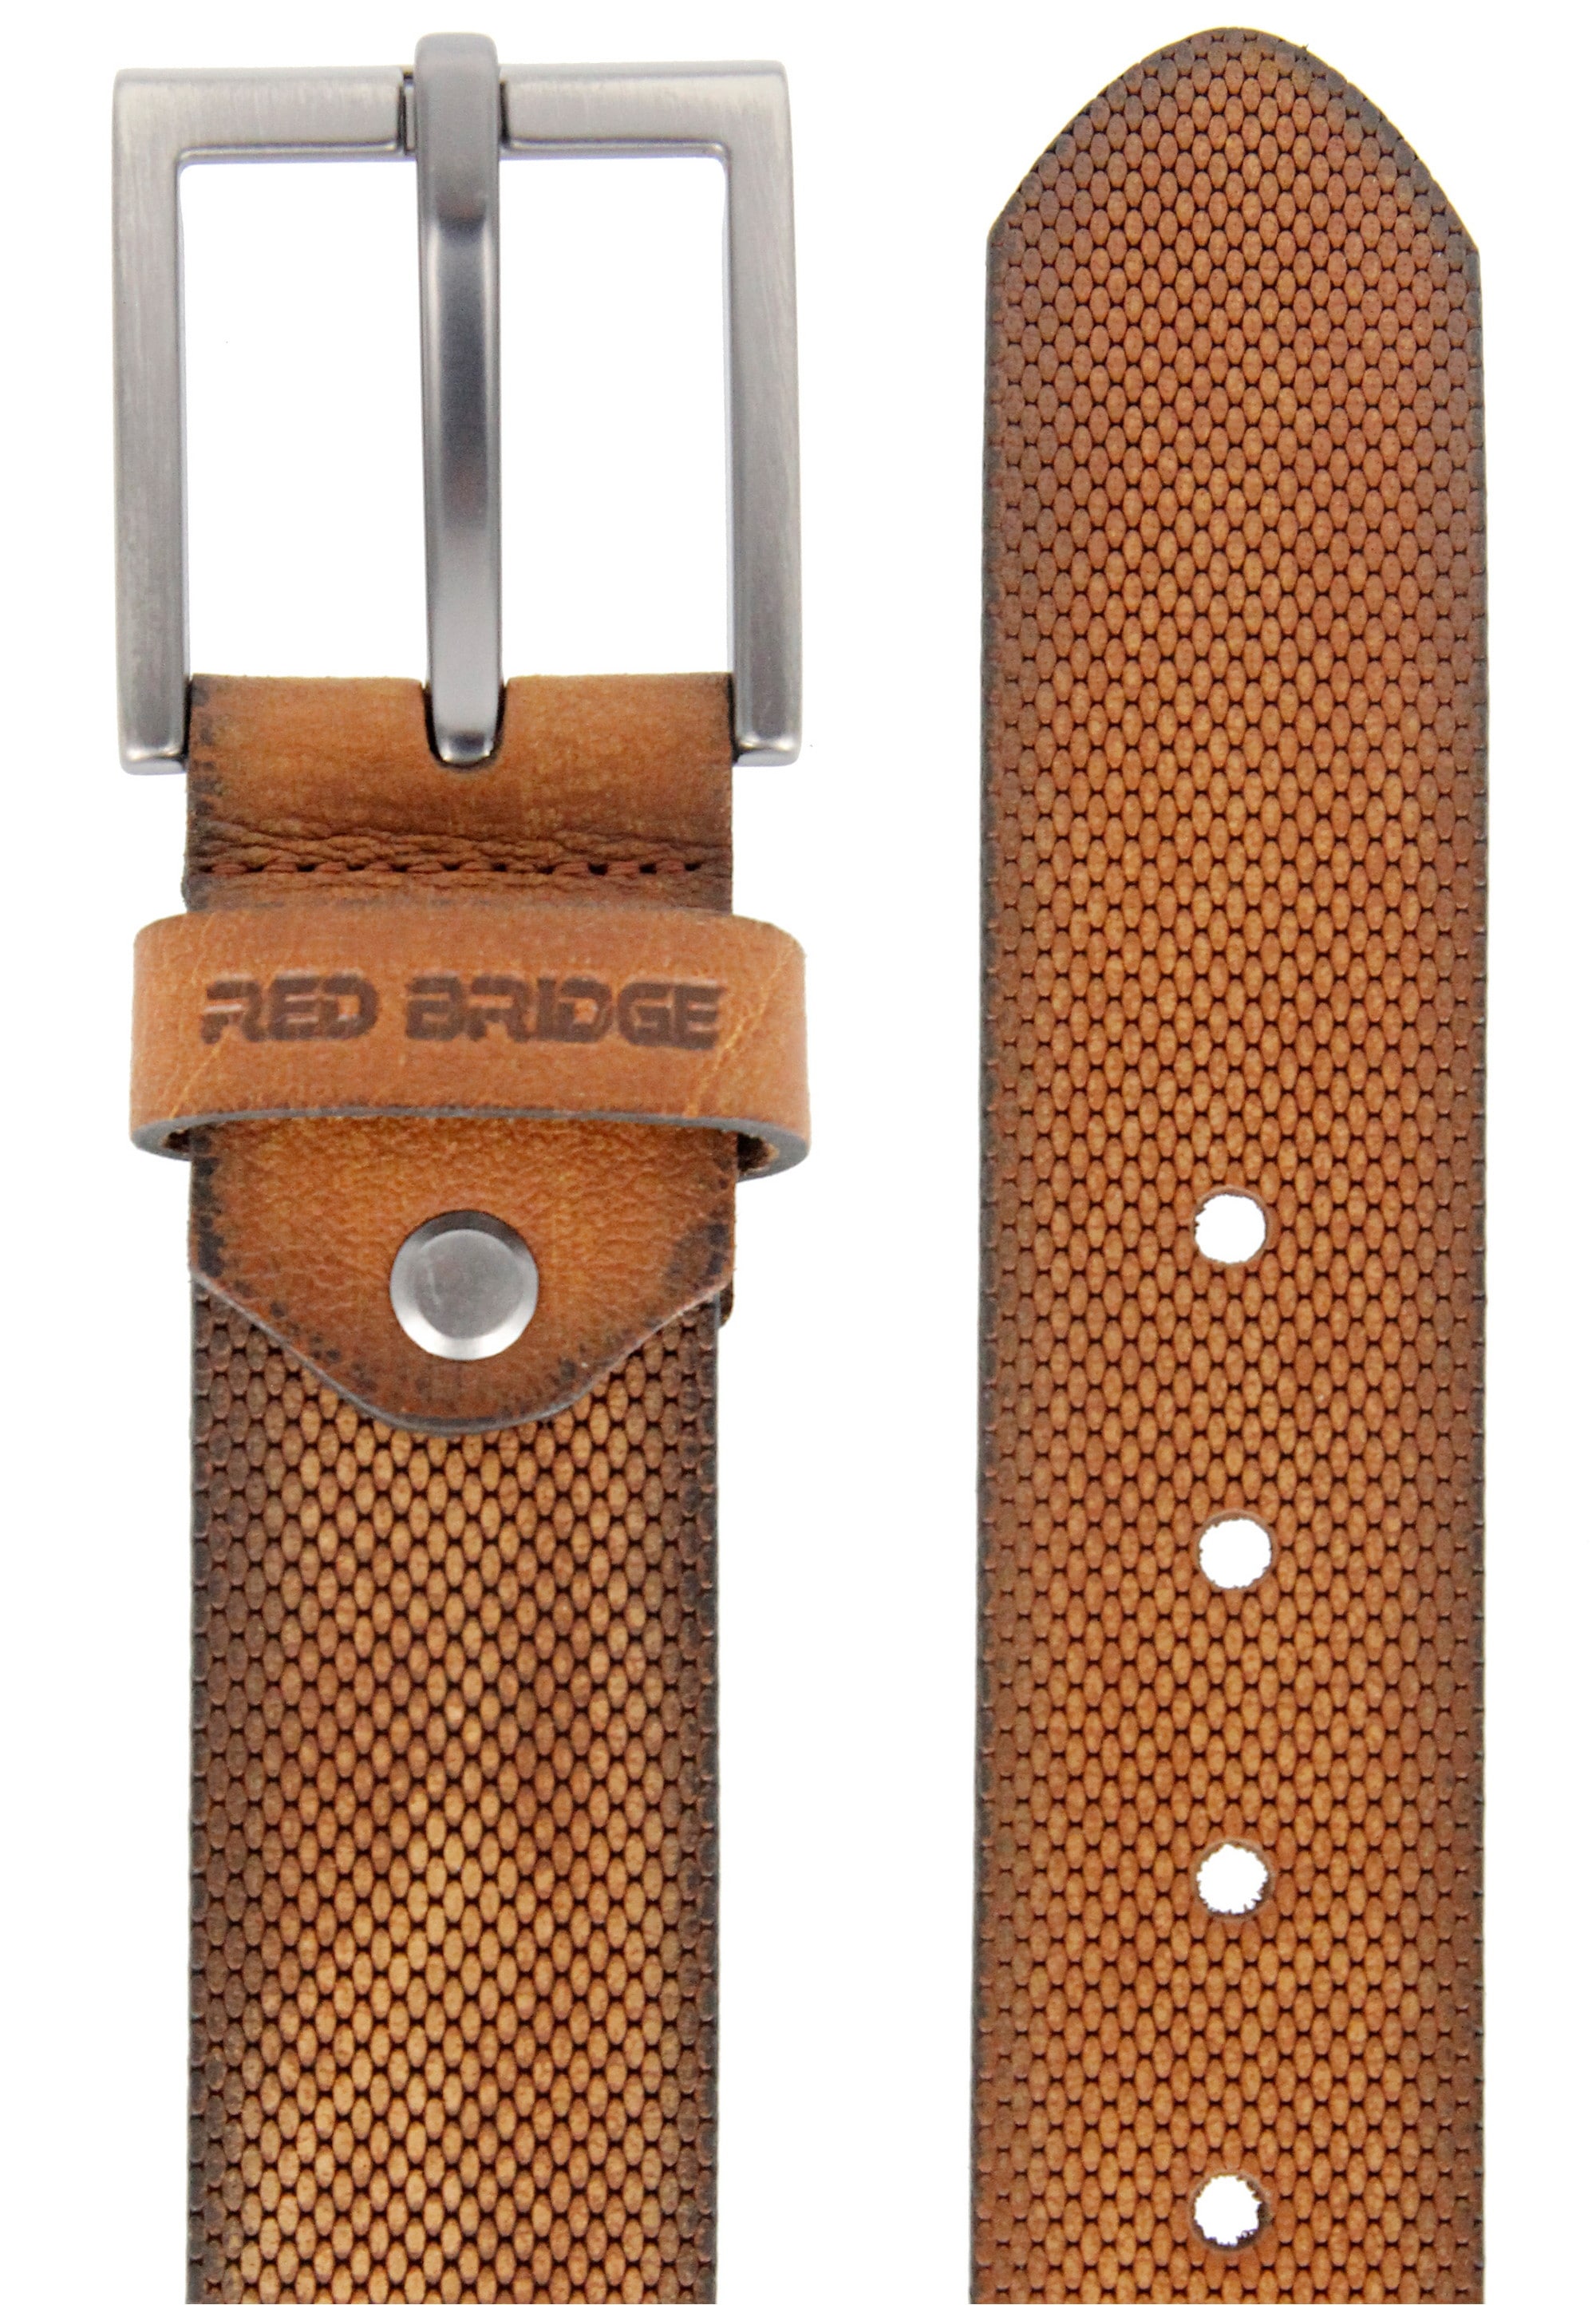 Design RedBridge »Frisco«, BAUR | Ledergürtel in kaufen schlichtem